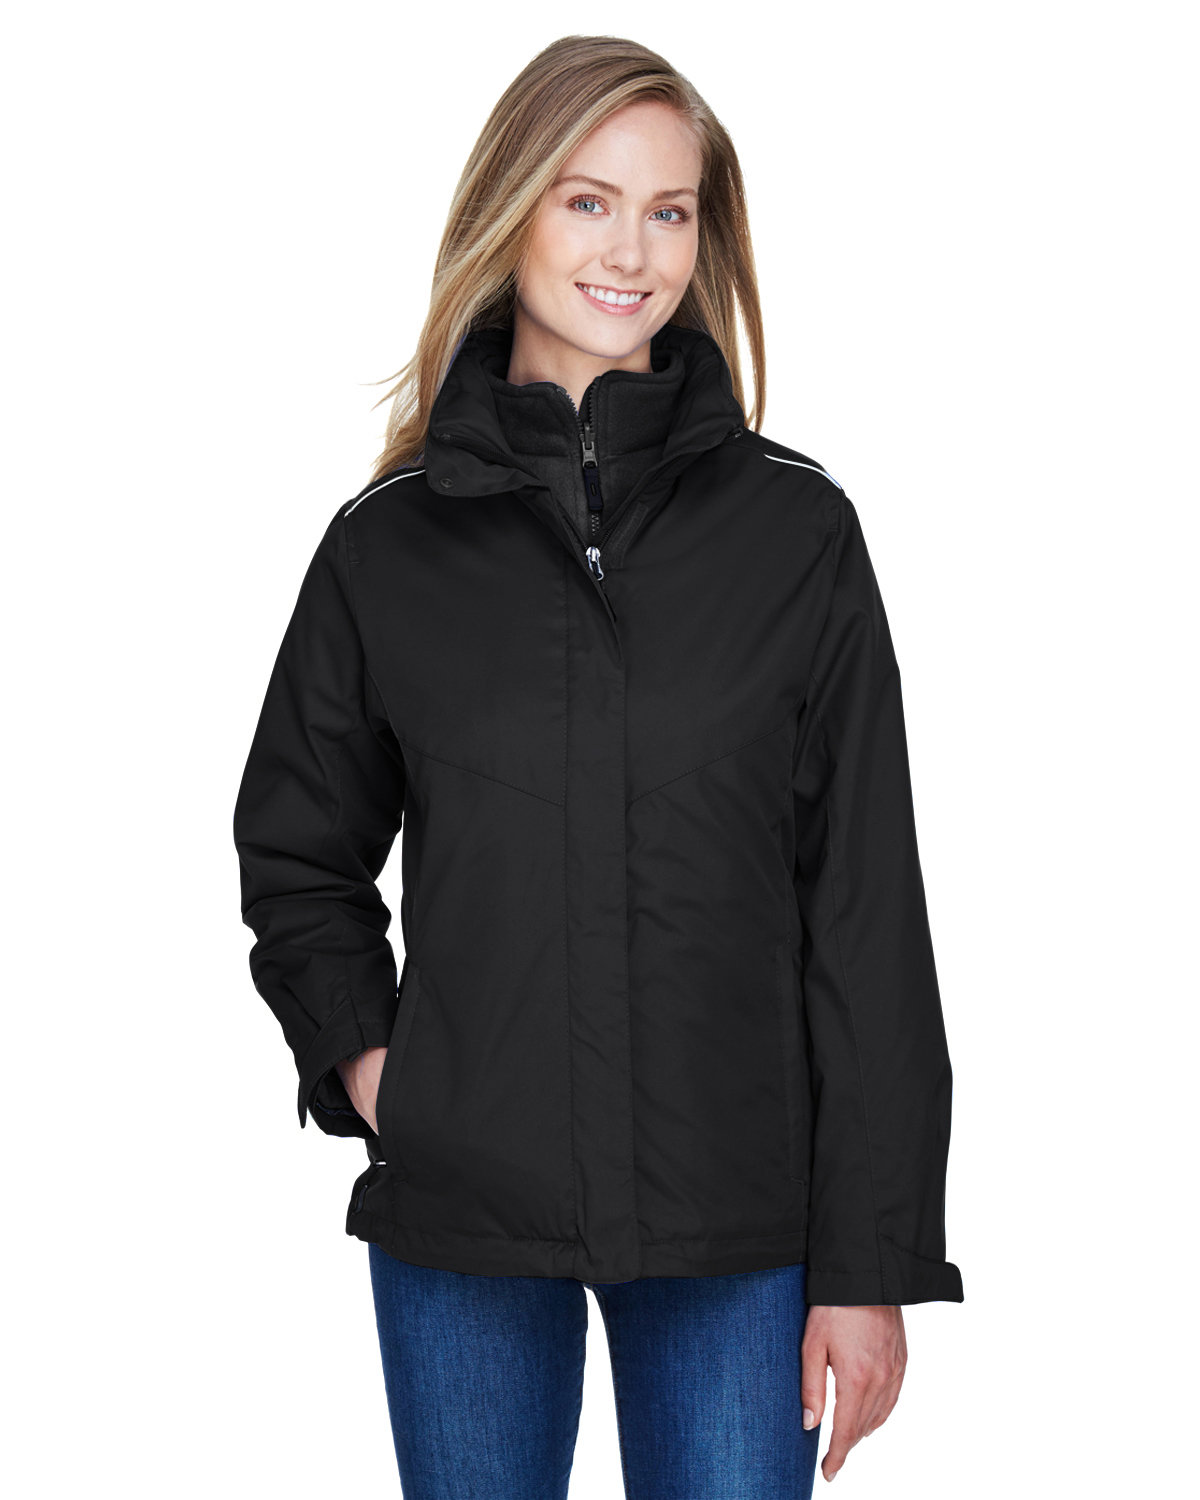 Core 365 Ladies' Region 3-in-1 Jacket with Fleece Liner BLACK 